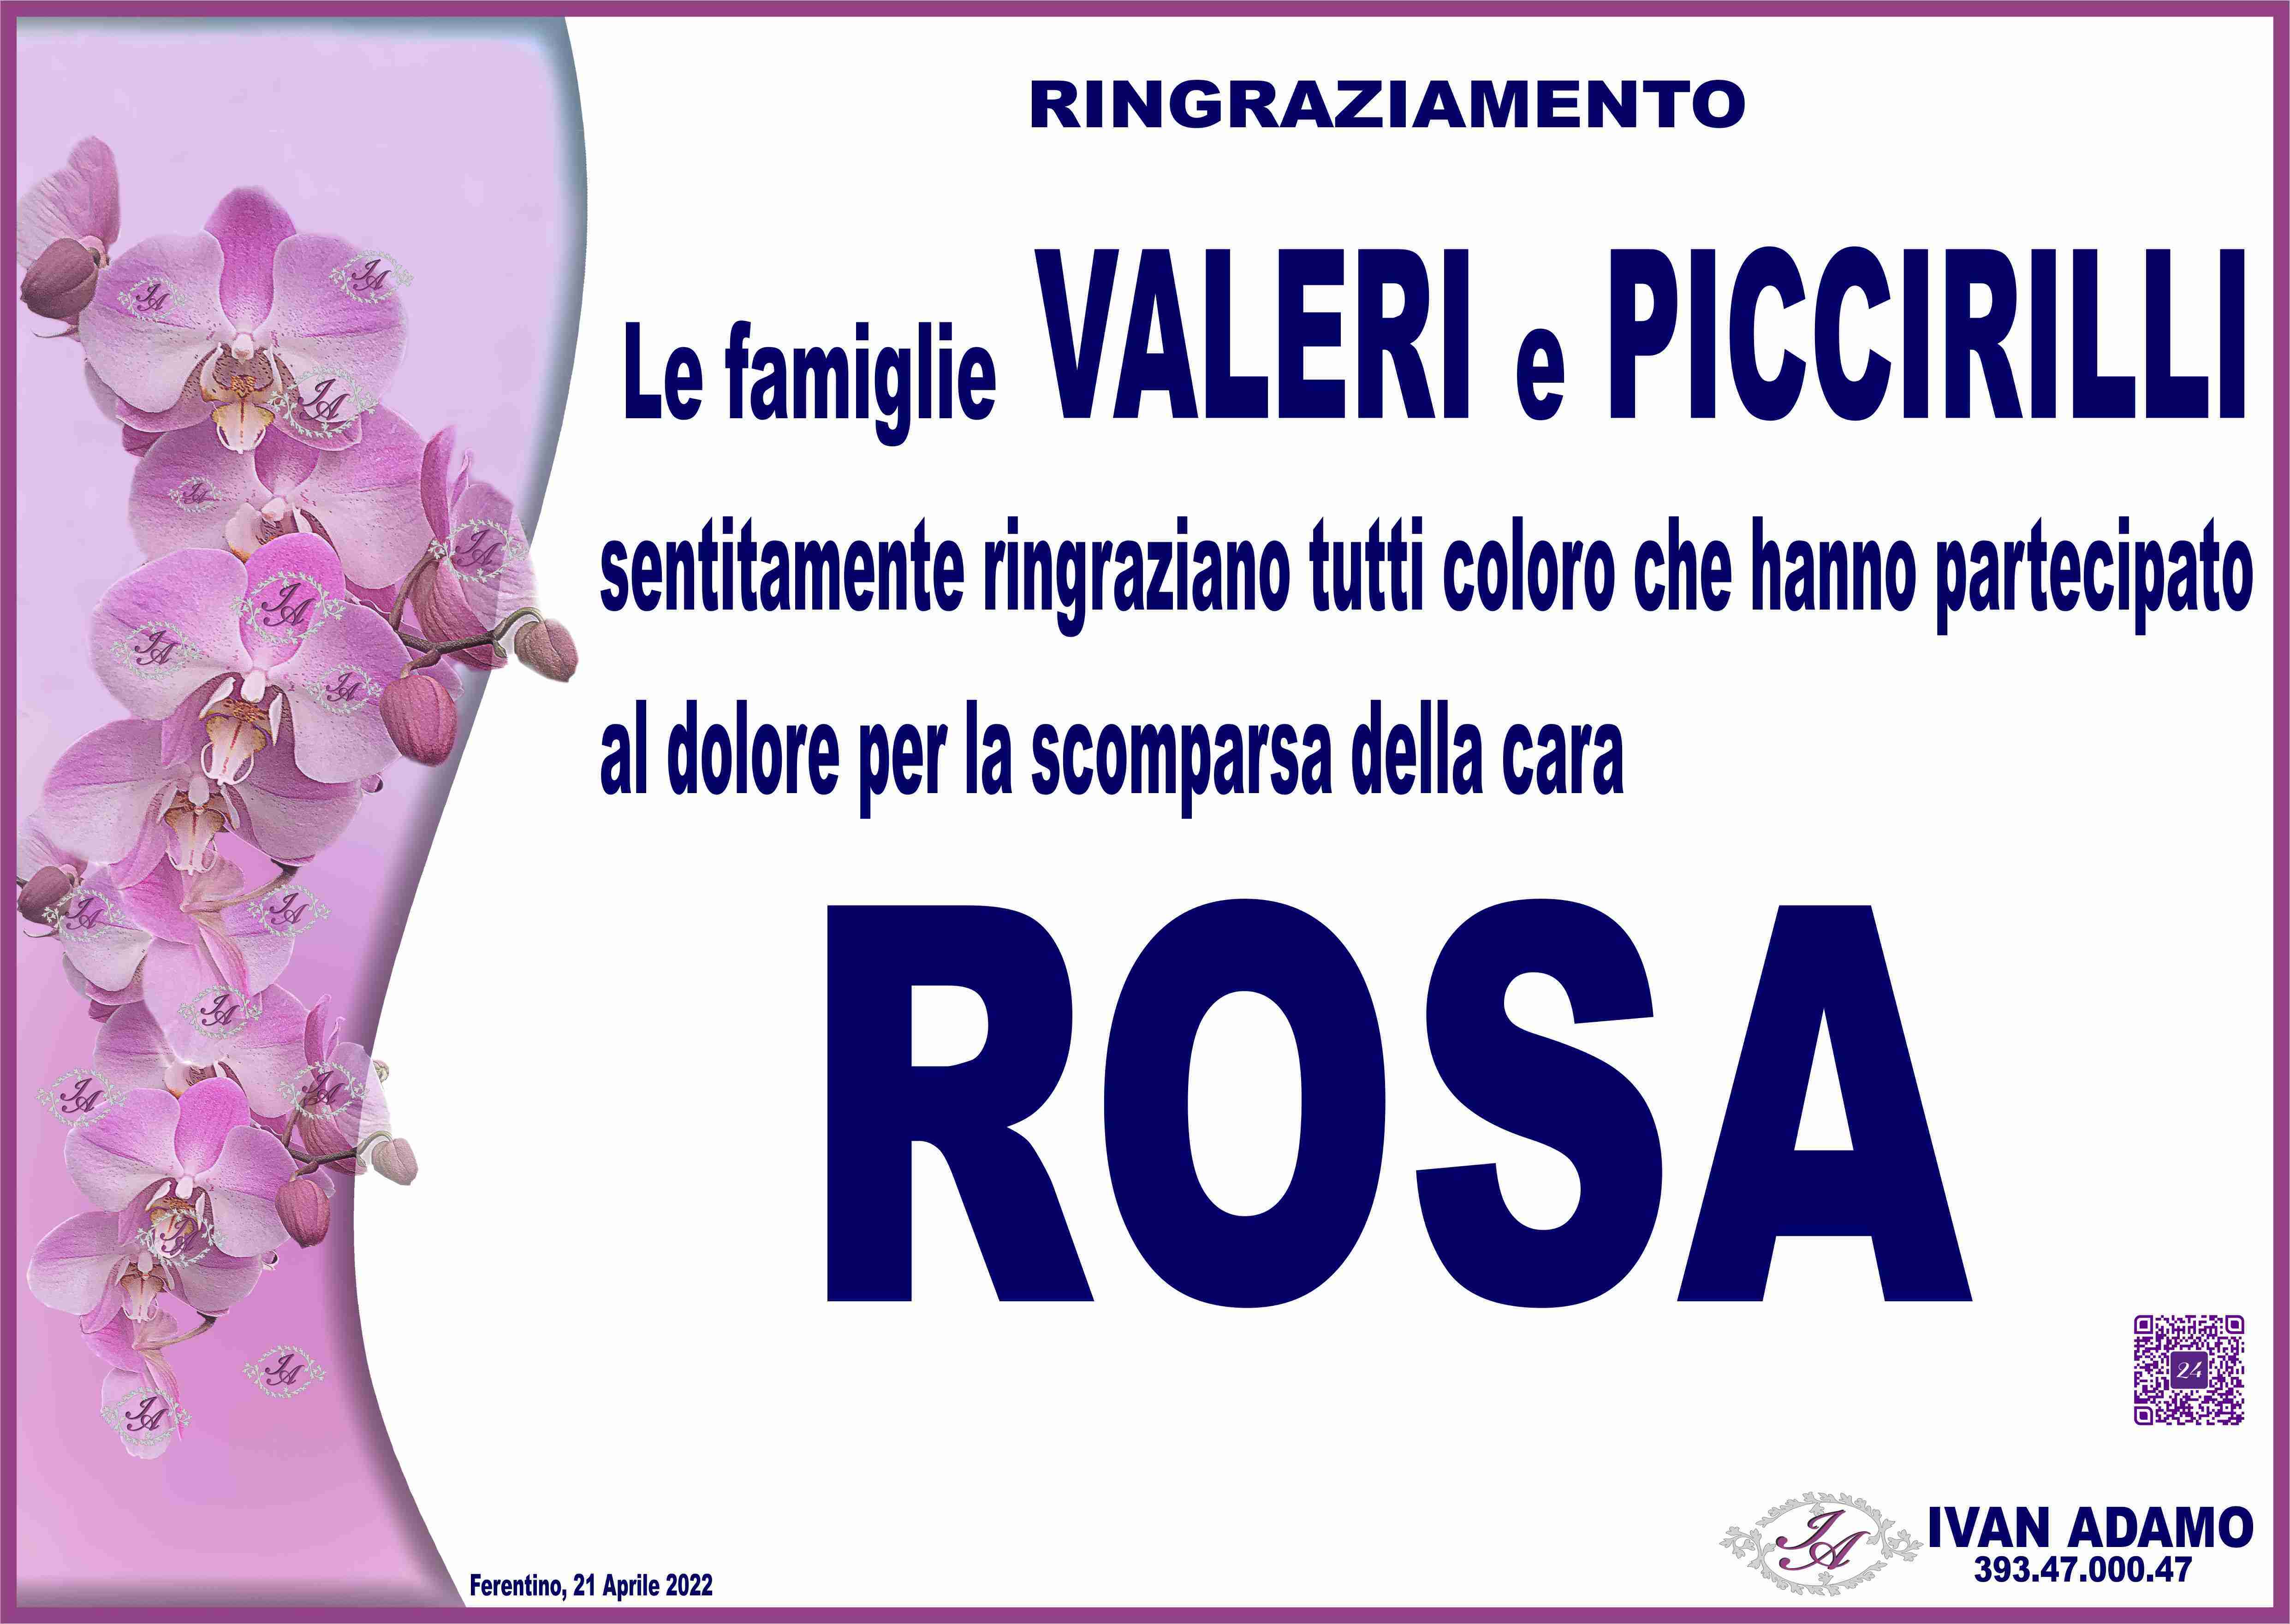 Rosa Piccirilli